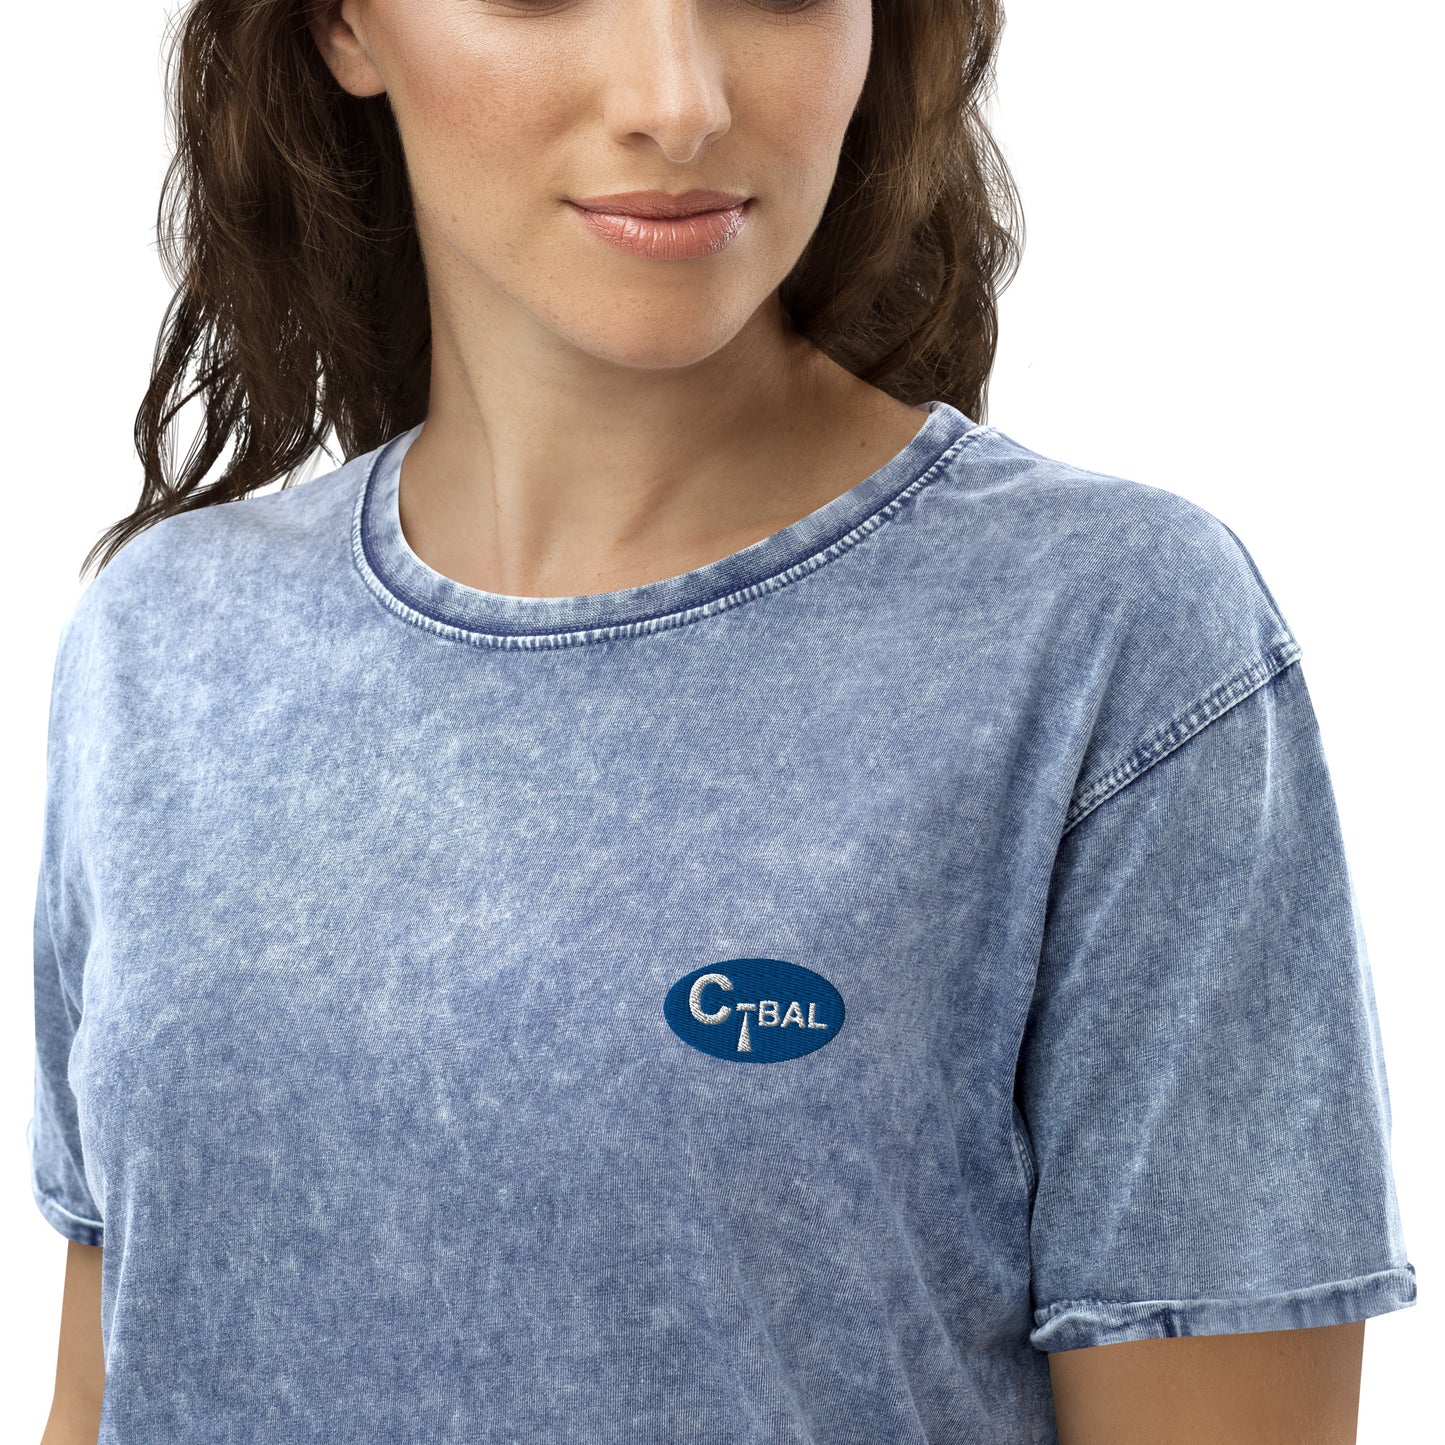 B001 - Denim T-shirt (C-BAL : Biru / Bordir Logo)